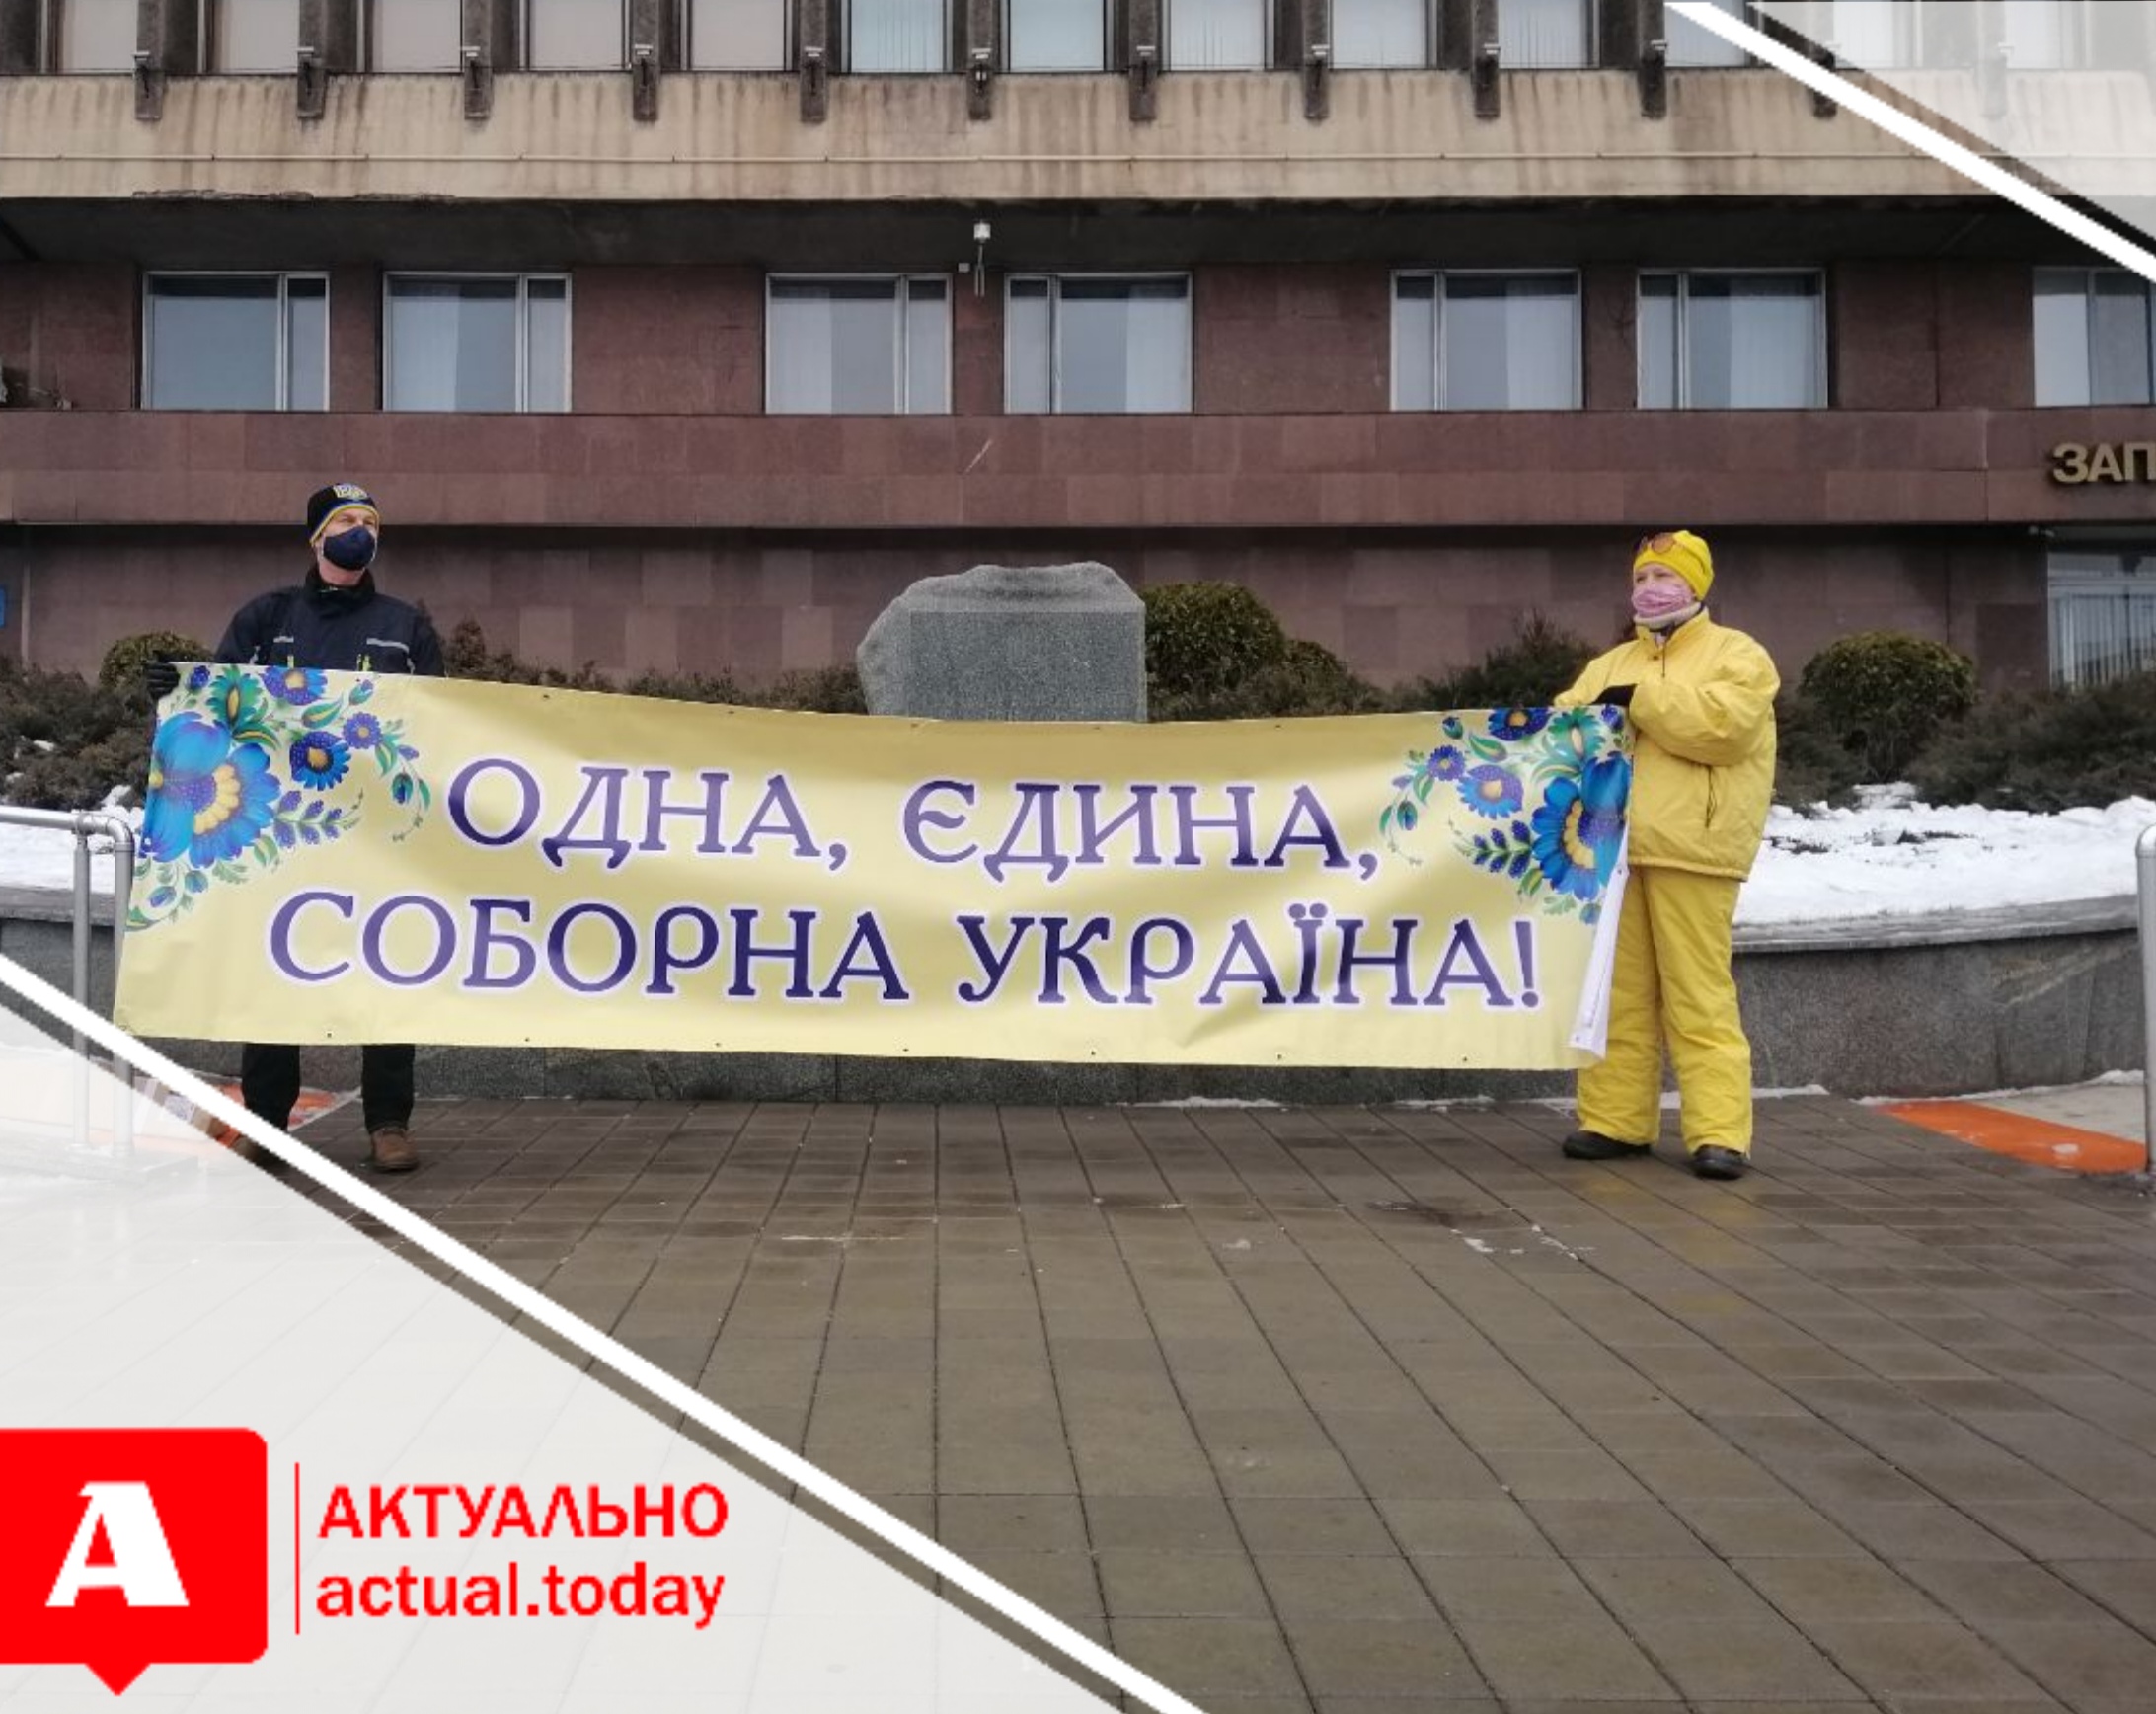 Запорожцы устроили необычный флешмоб в честь Дня Соборности Украины (ФОТО, ВИДЕО)